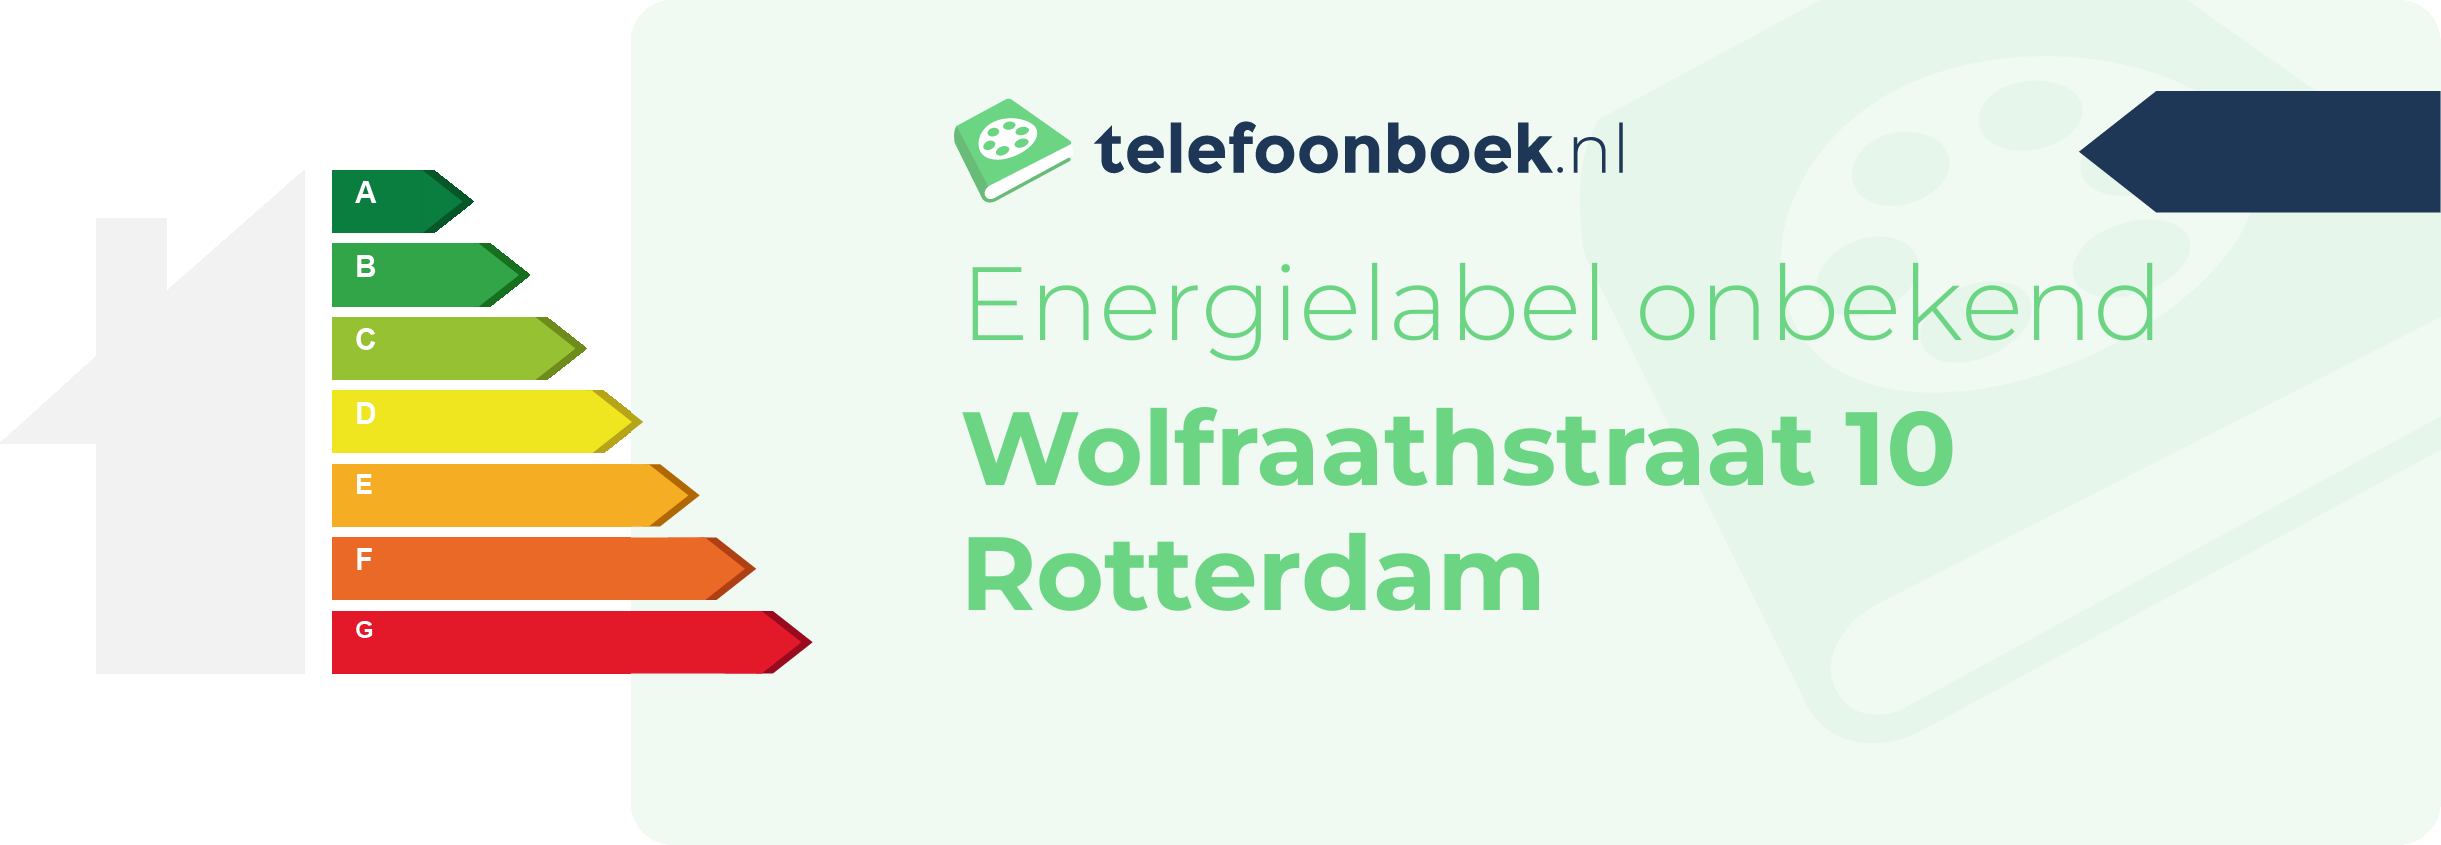 Energielabel Wolfraathstraat 10 Rotterdam